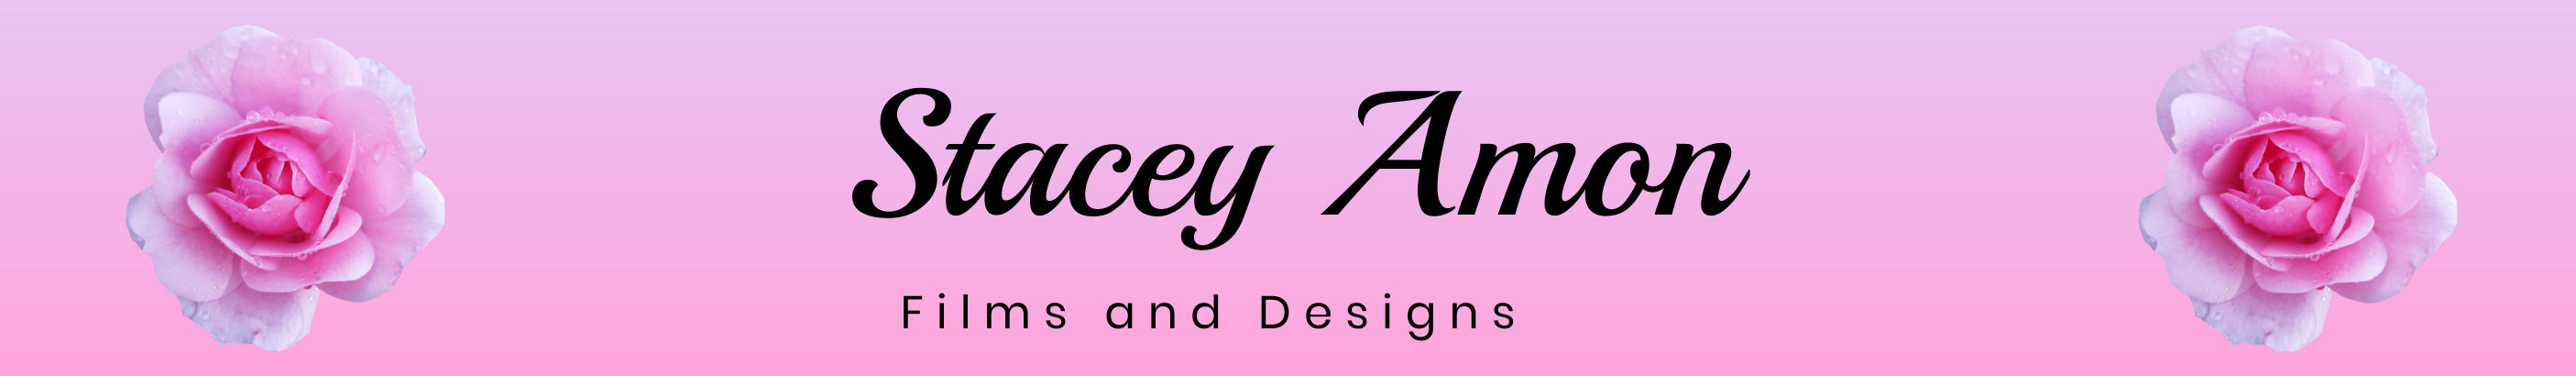 Banner de perfil de Stacey Amon